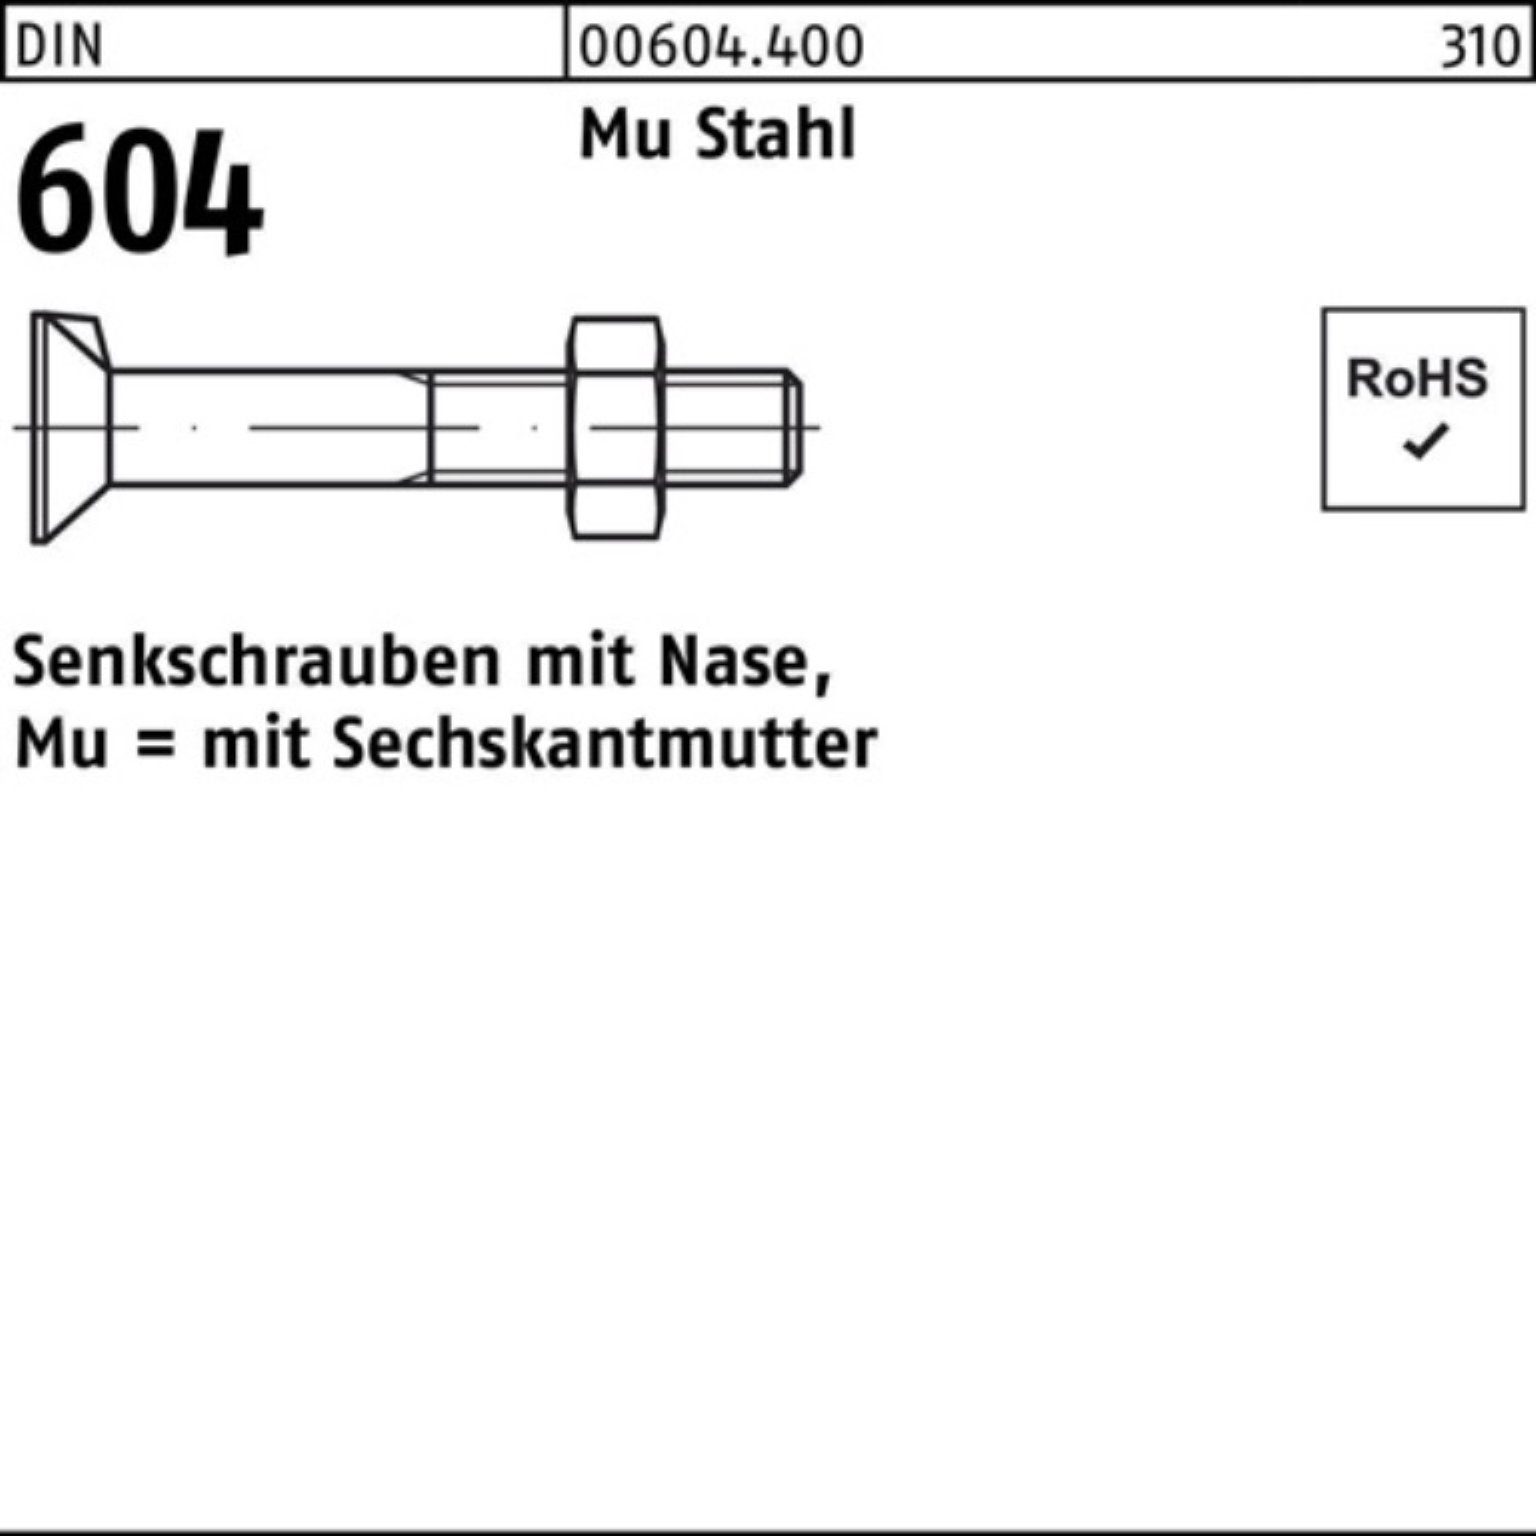 Reyher 100er Nase/6-ktmutter 2 M20x DIN 90 Senkschraube 4.6 604 Mu Senkschraube Stahl Pack